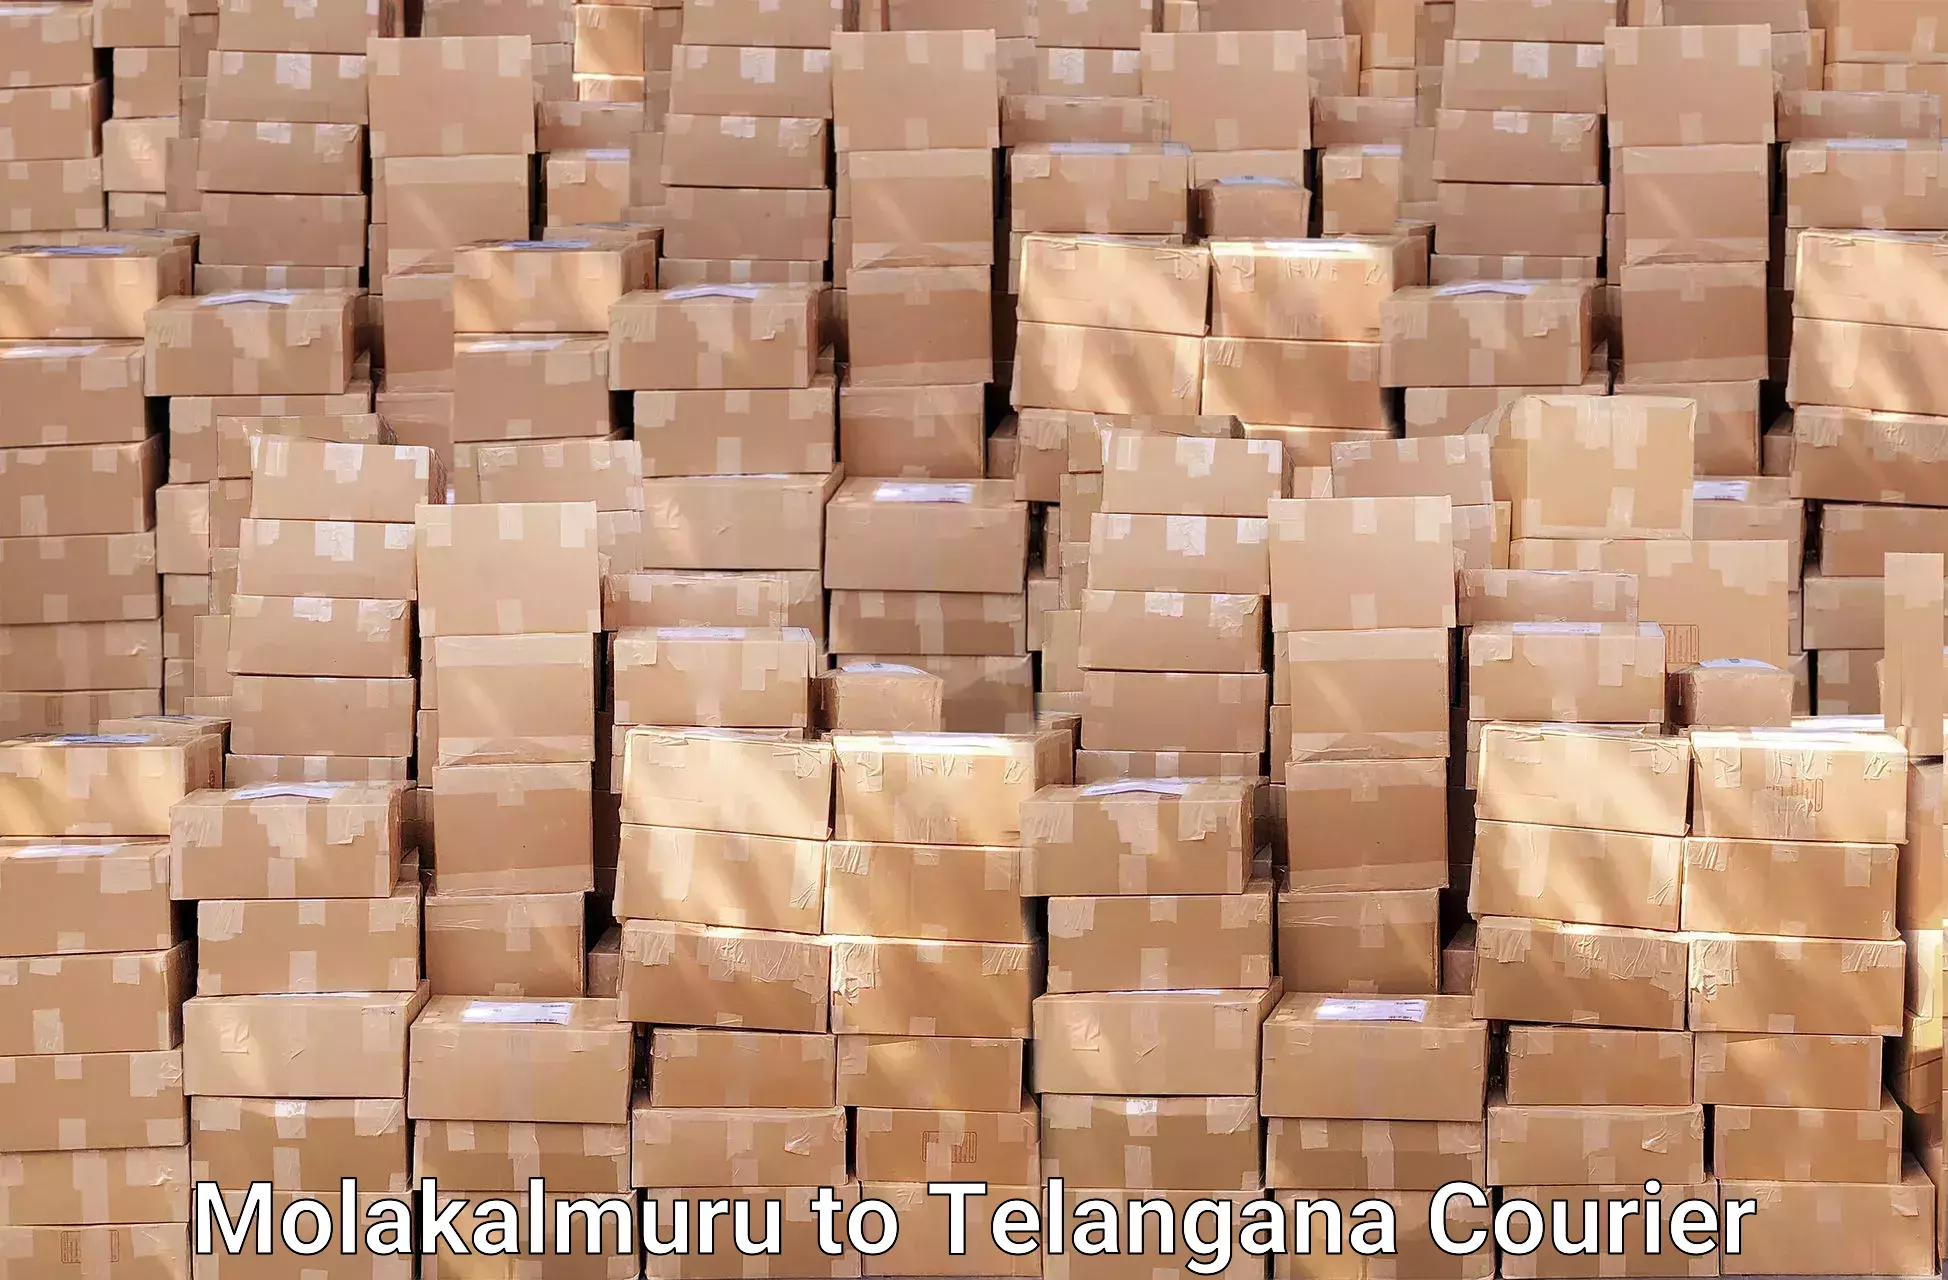 Trusted relocation experts in Molakalmuru to Tiryani